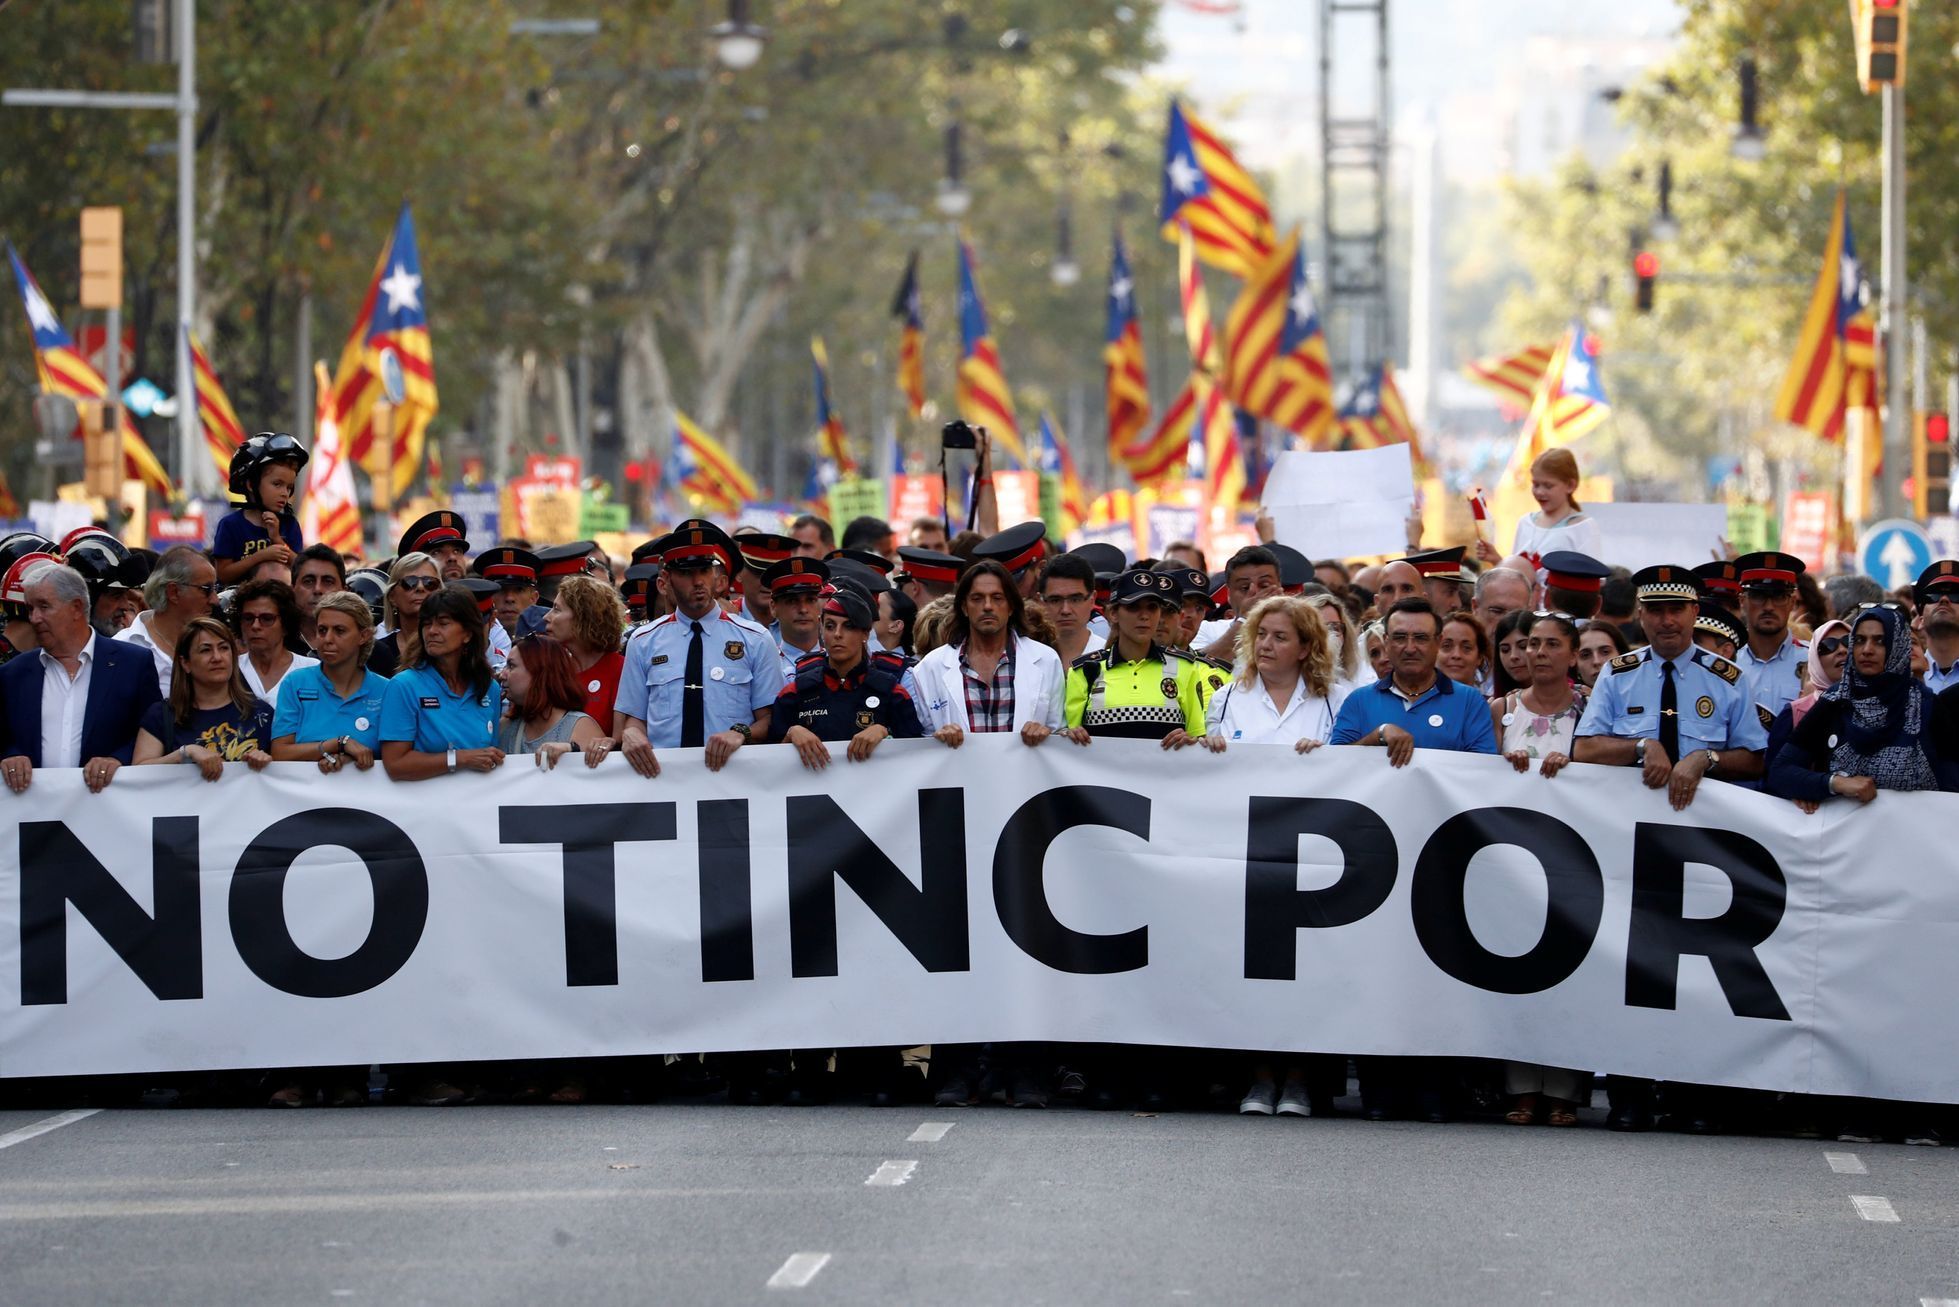 Pochodu jednoty proti terorismu s heslem "Nemáme strach" se v Barceloně účastnilo na půl milionu lidí